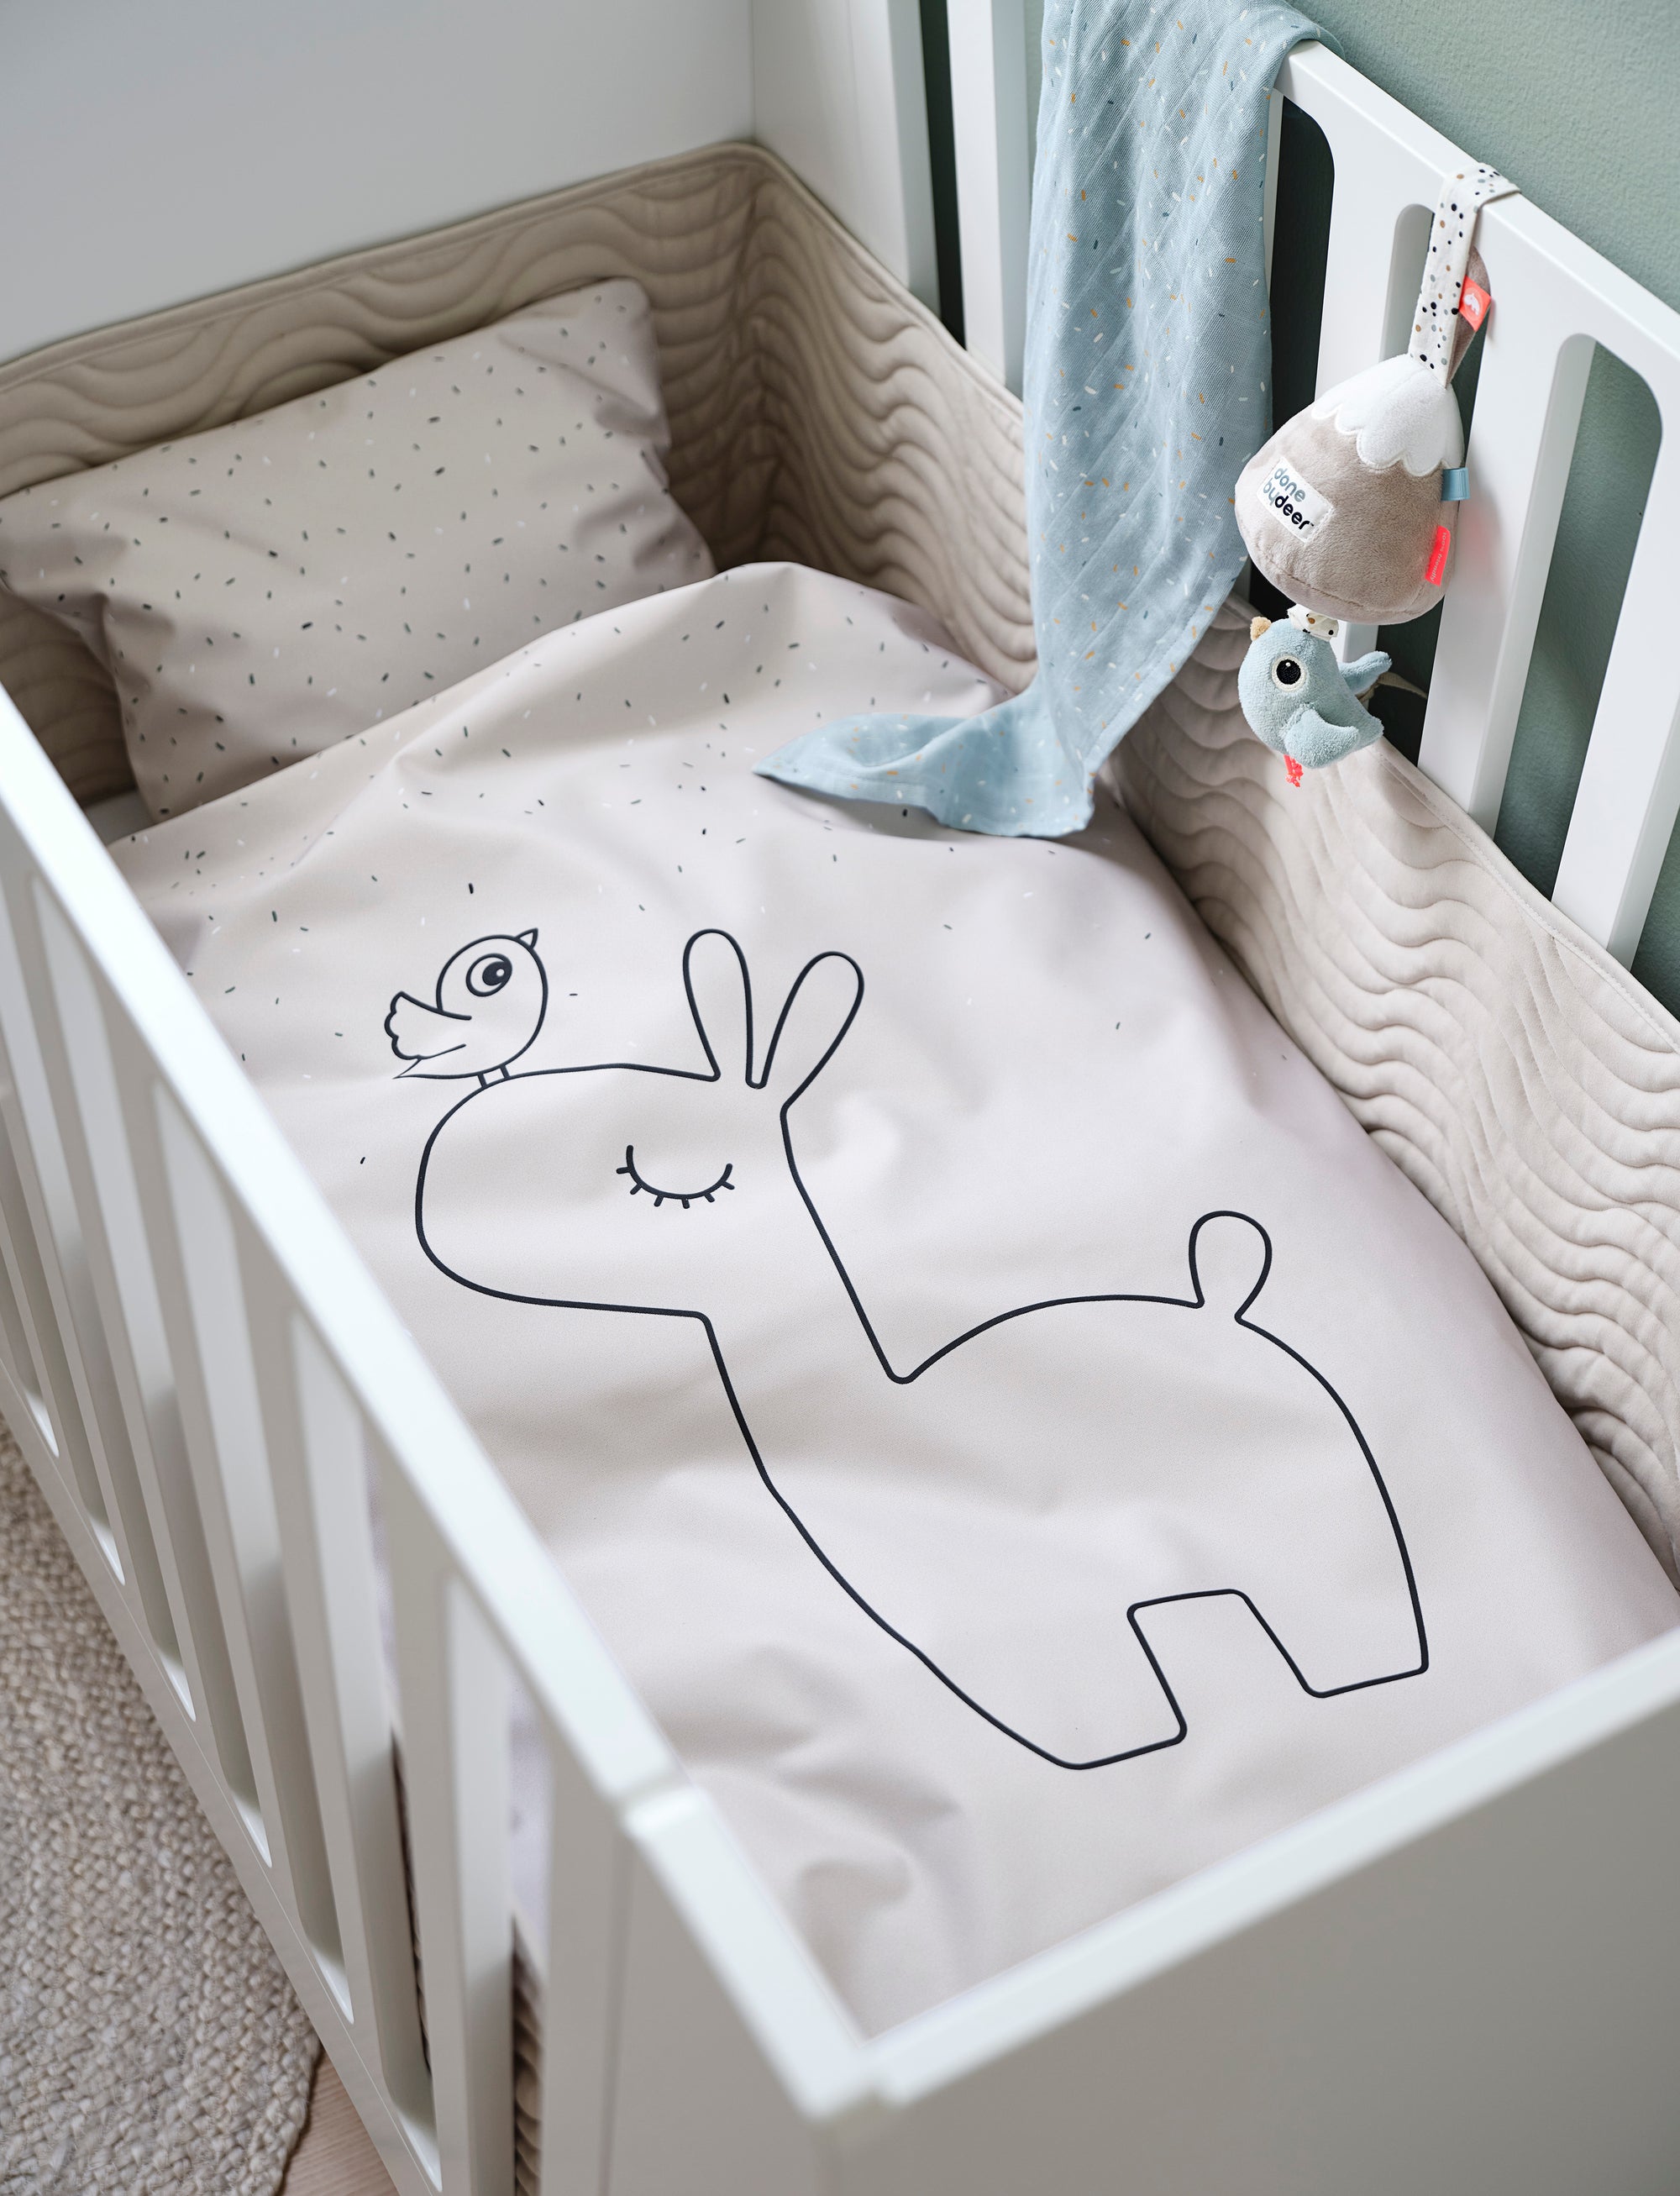 Les accessoires de lit indispensables pour bébé - Puériculture